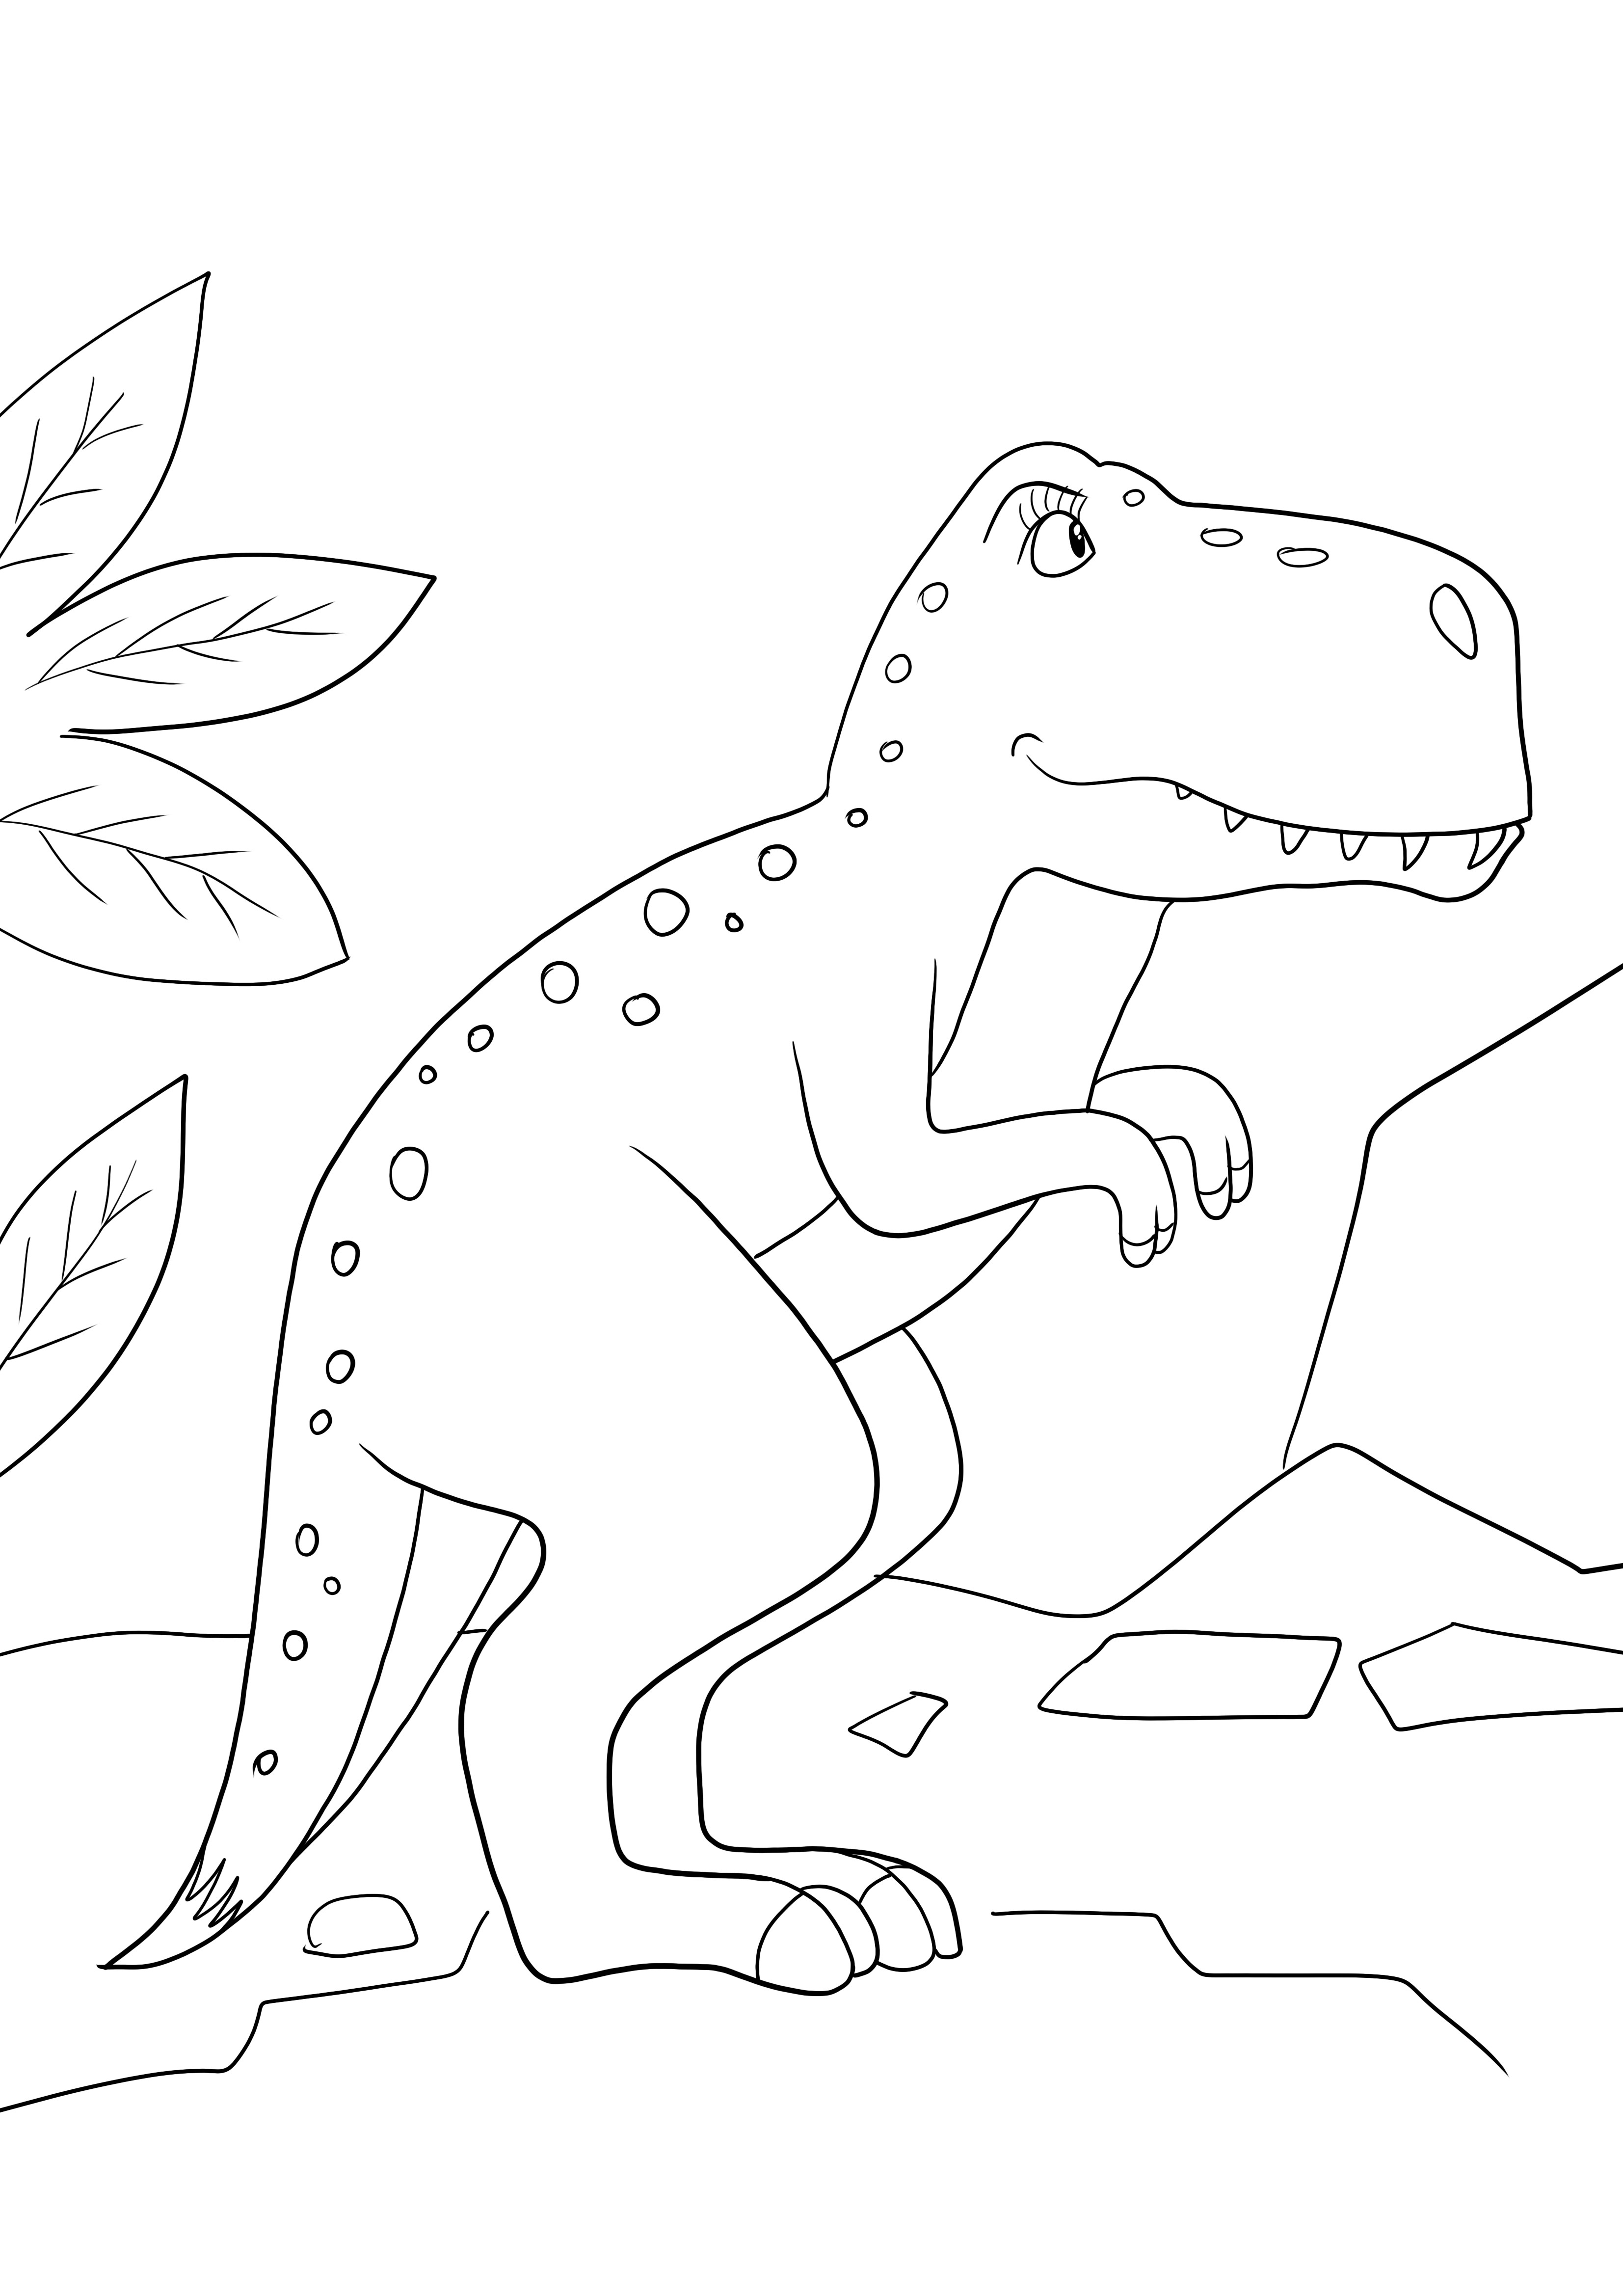 Seite zum Ausmalen und einfachen Herunterladen von weiblichen Dinosauriern